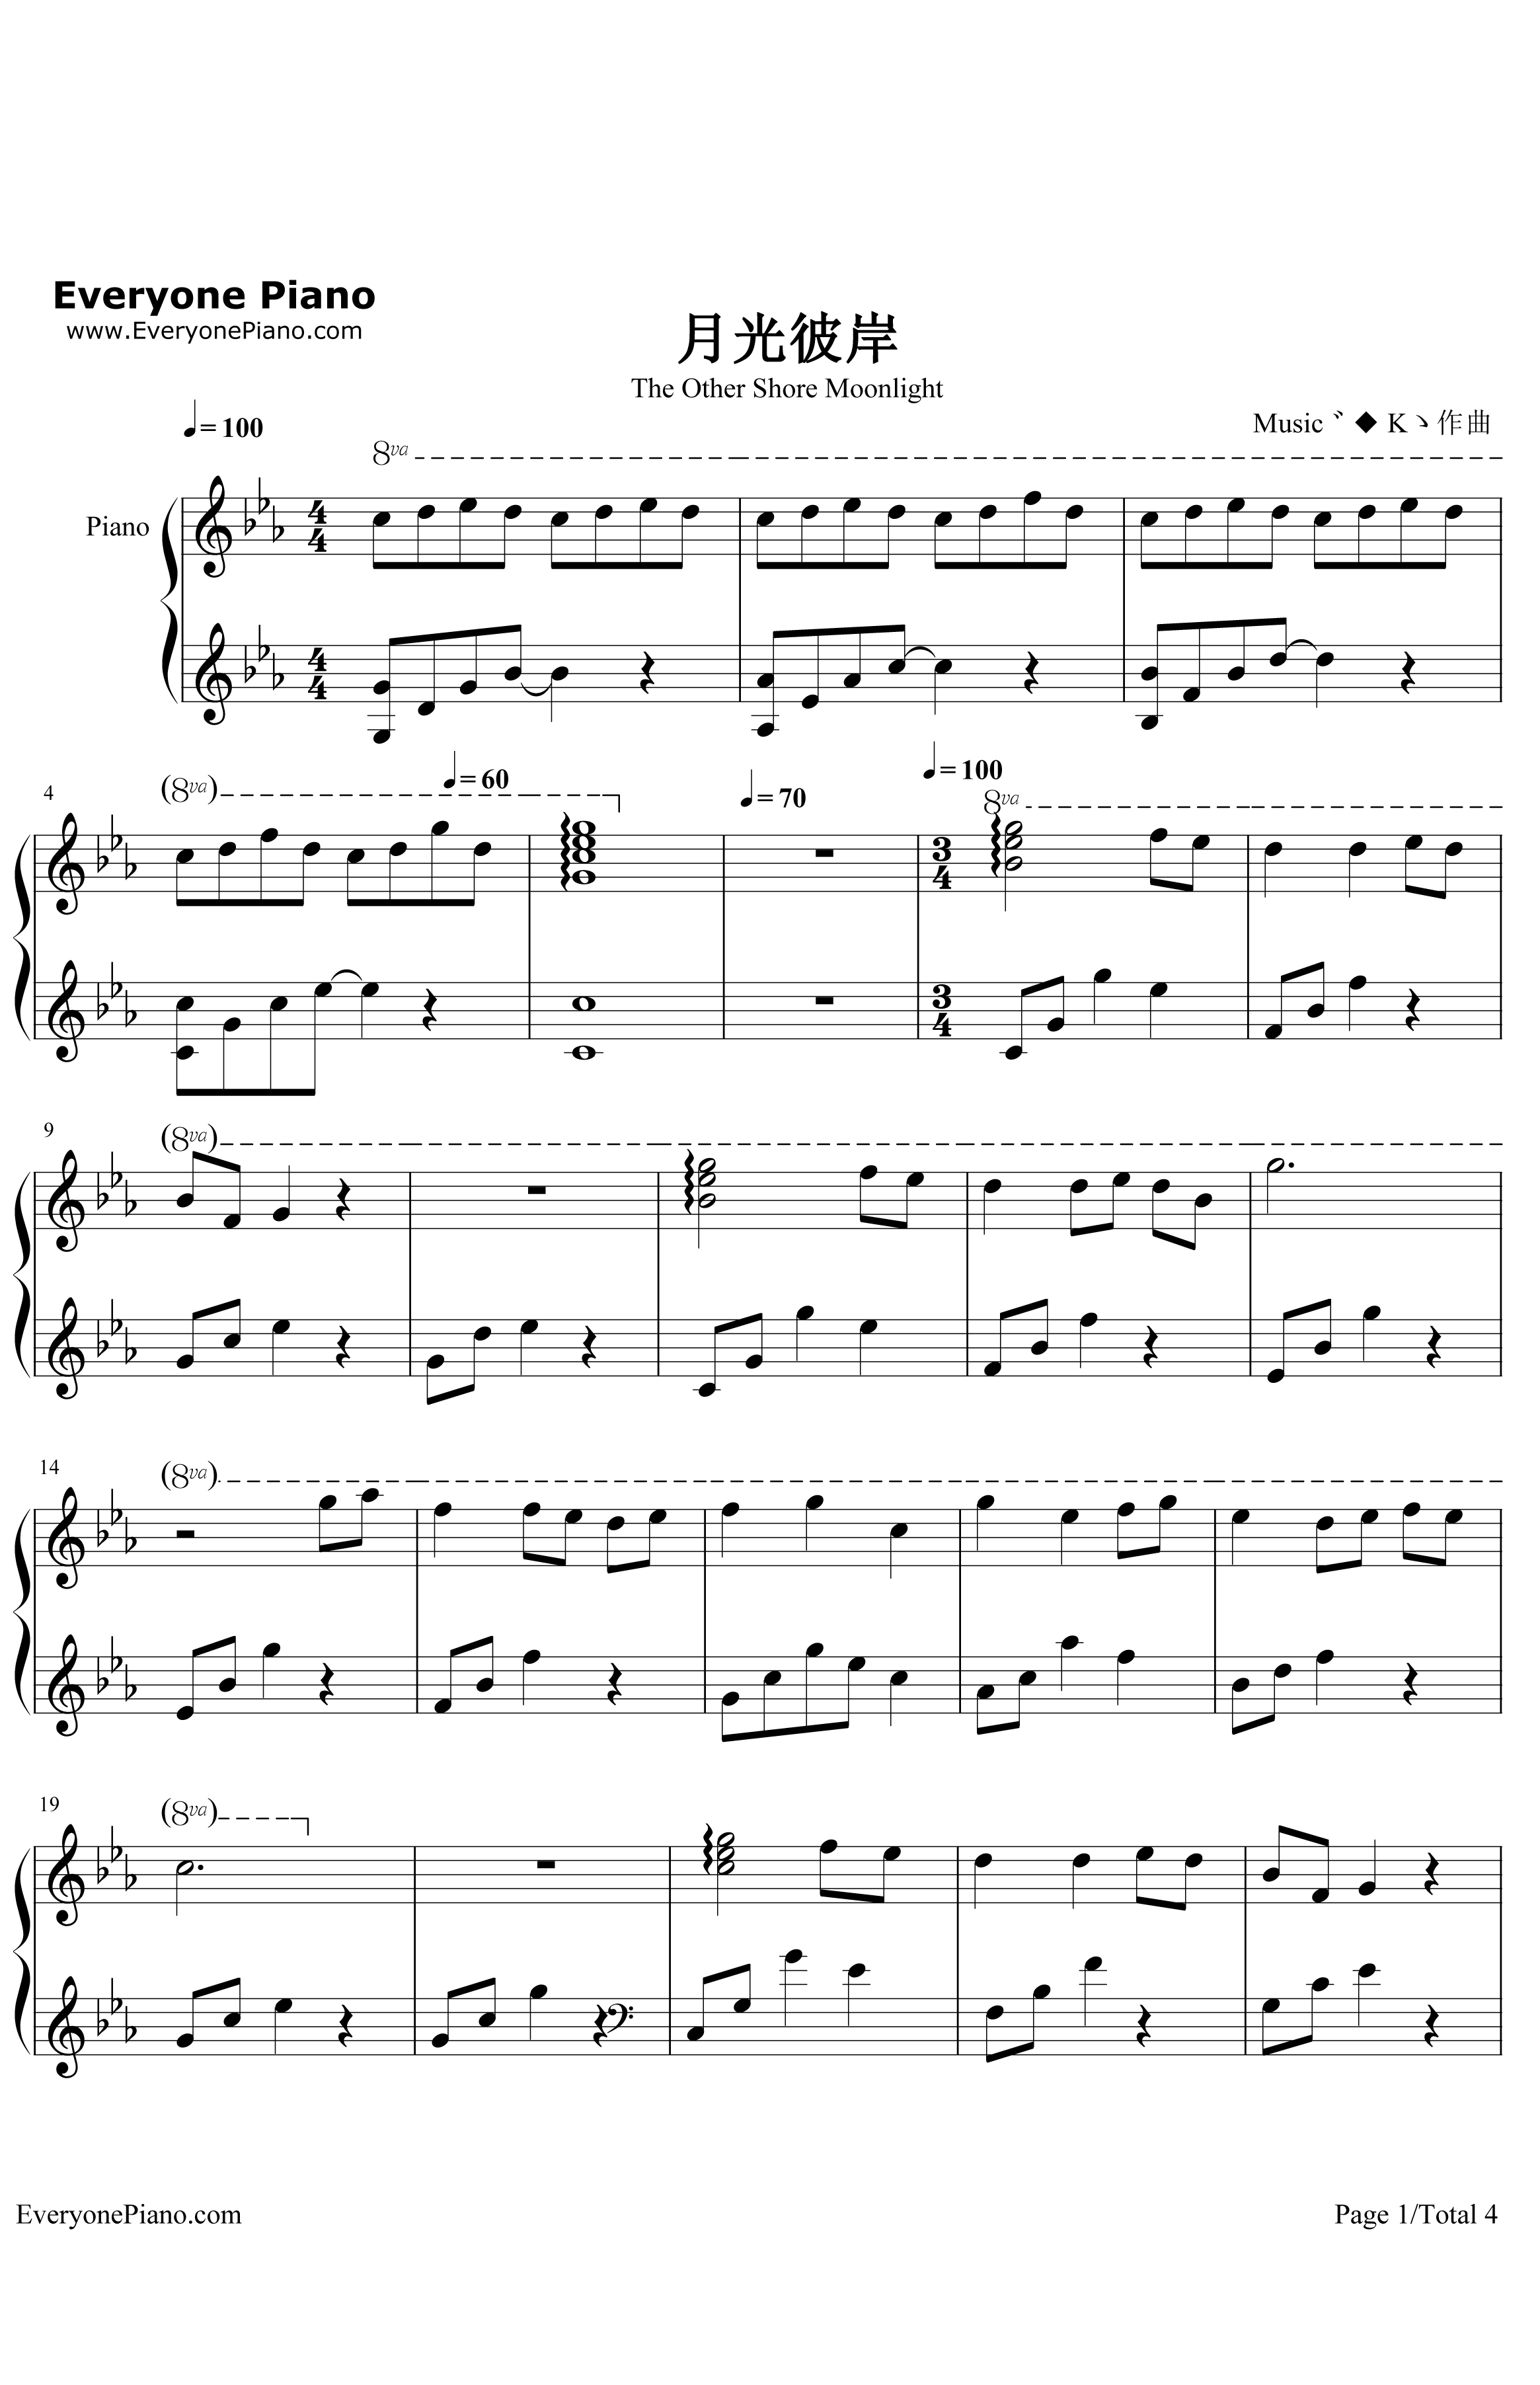 月光彼岸钢琴谱-Music゛◆Kゝ-原创音乐1